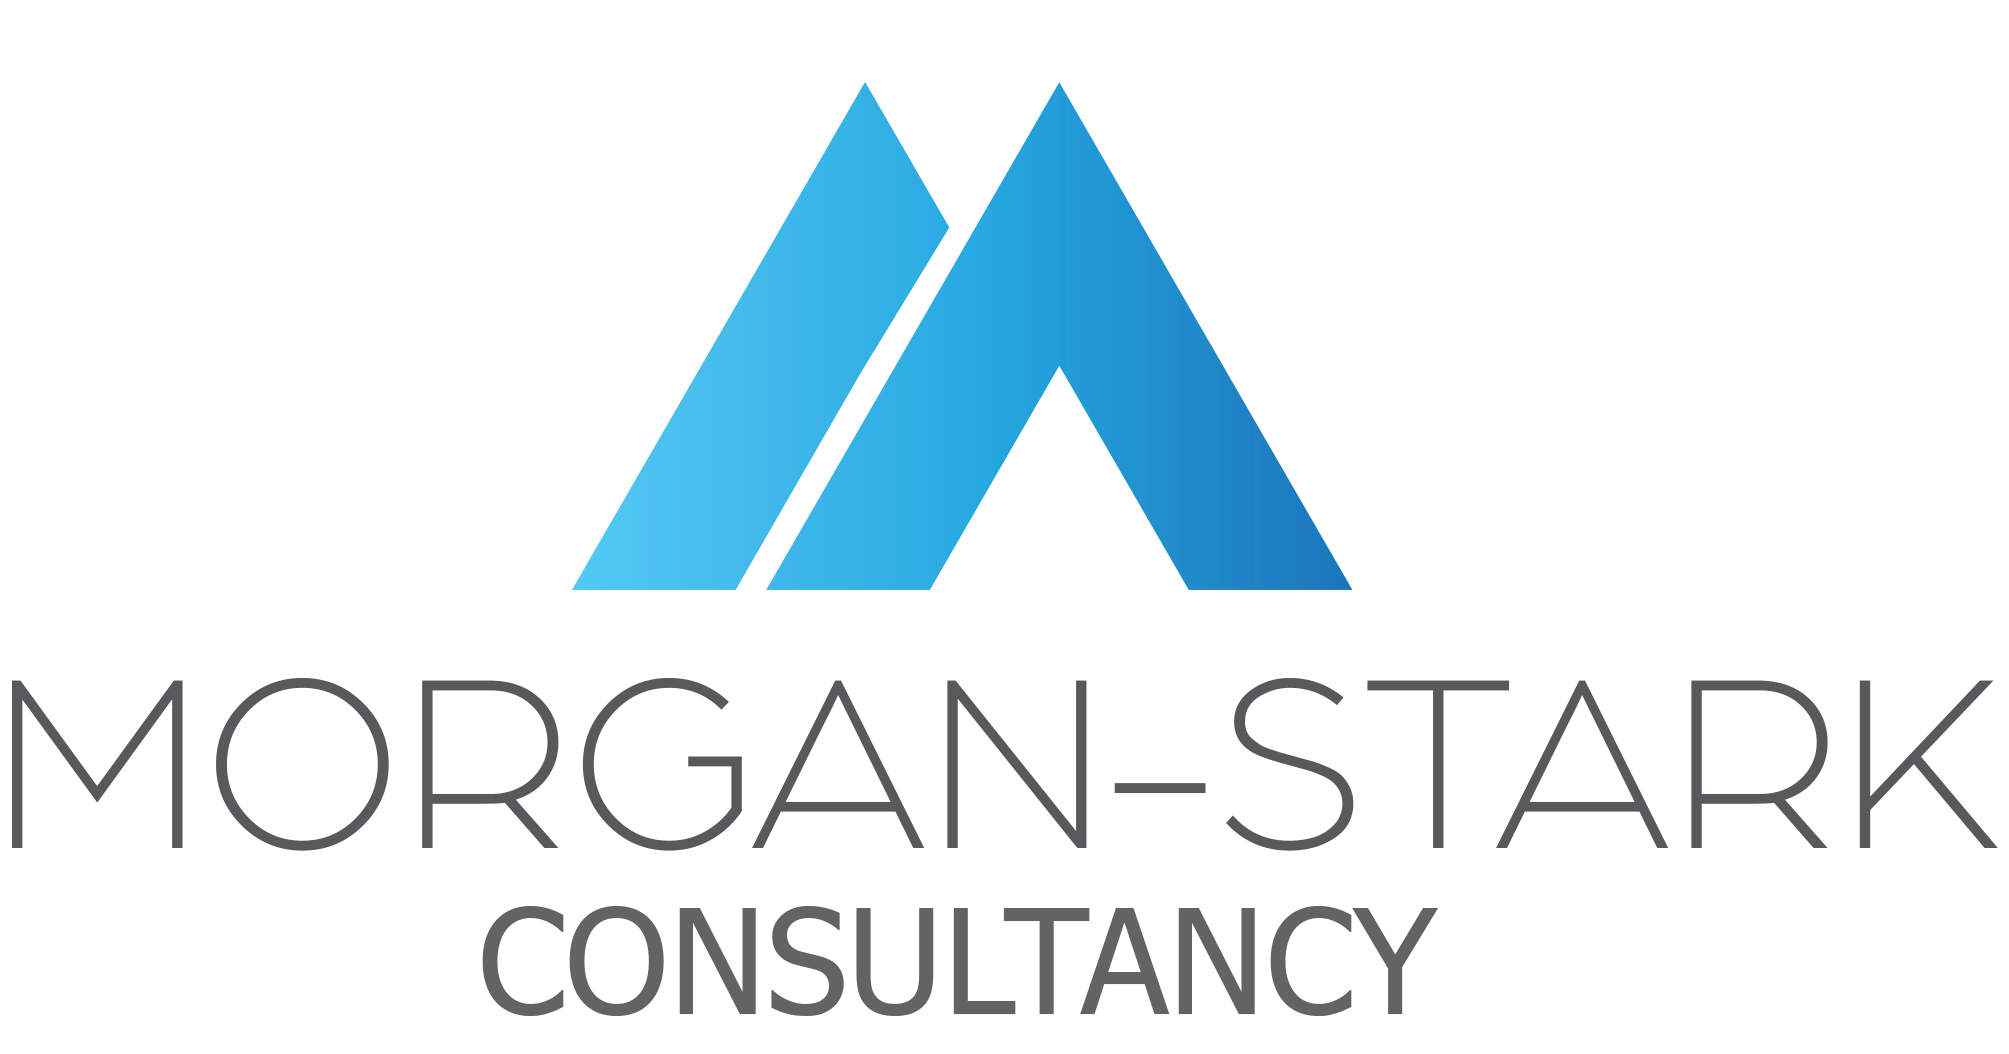 Morganstark – Marketing Consultancy